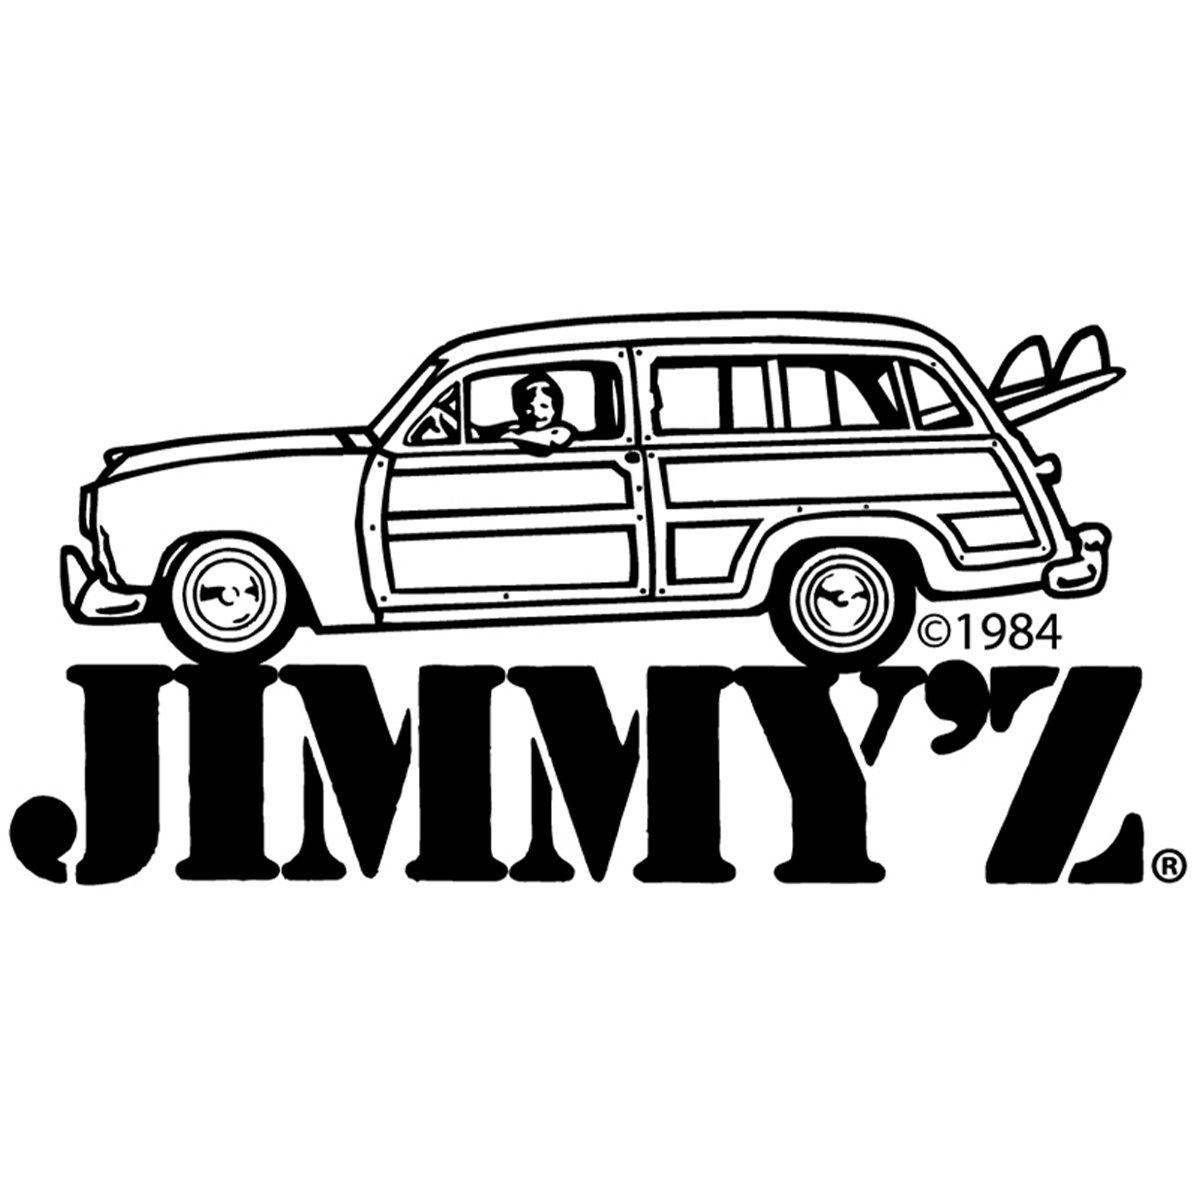 JIMMY-Z